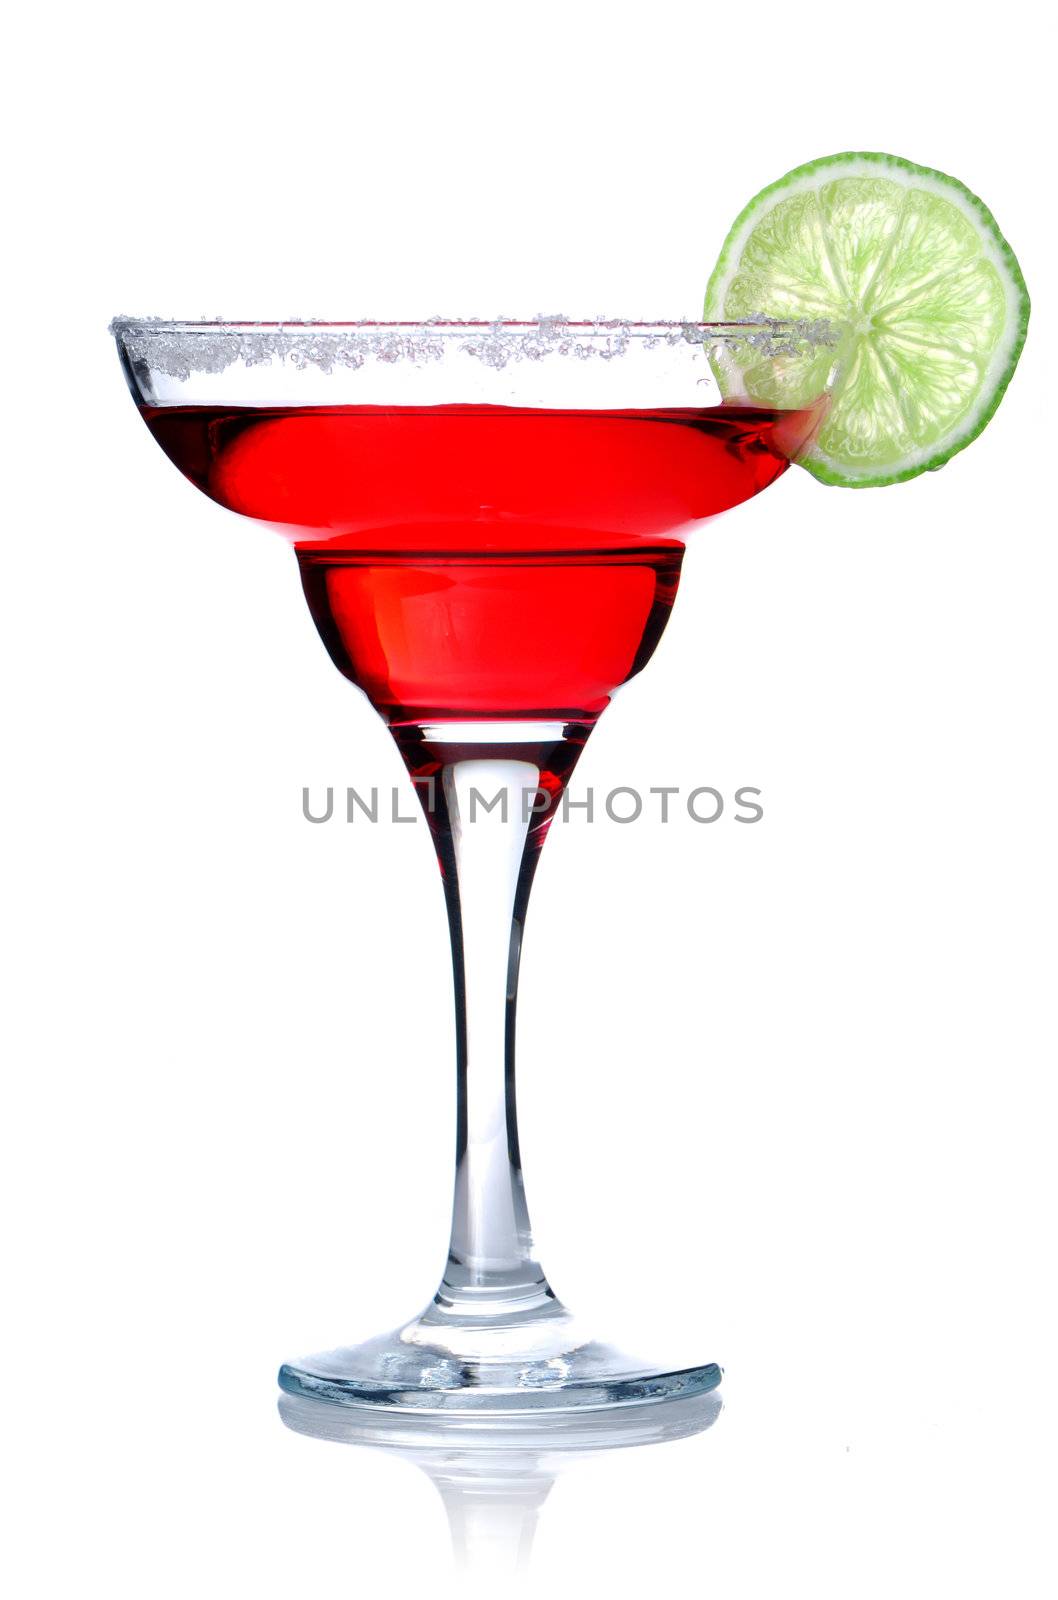 Margarita/Daiquiri cocktail by haveseen